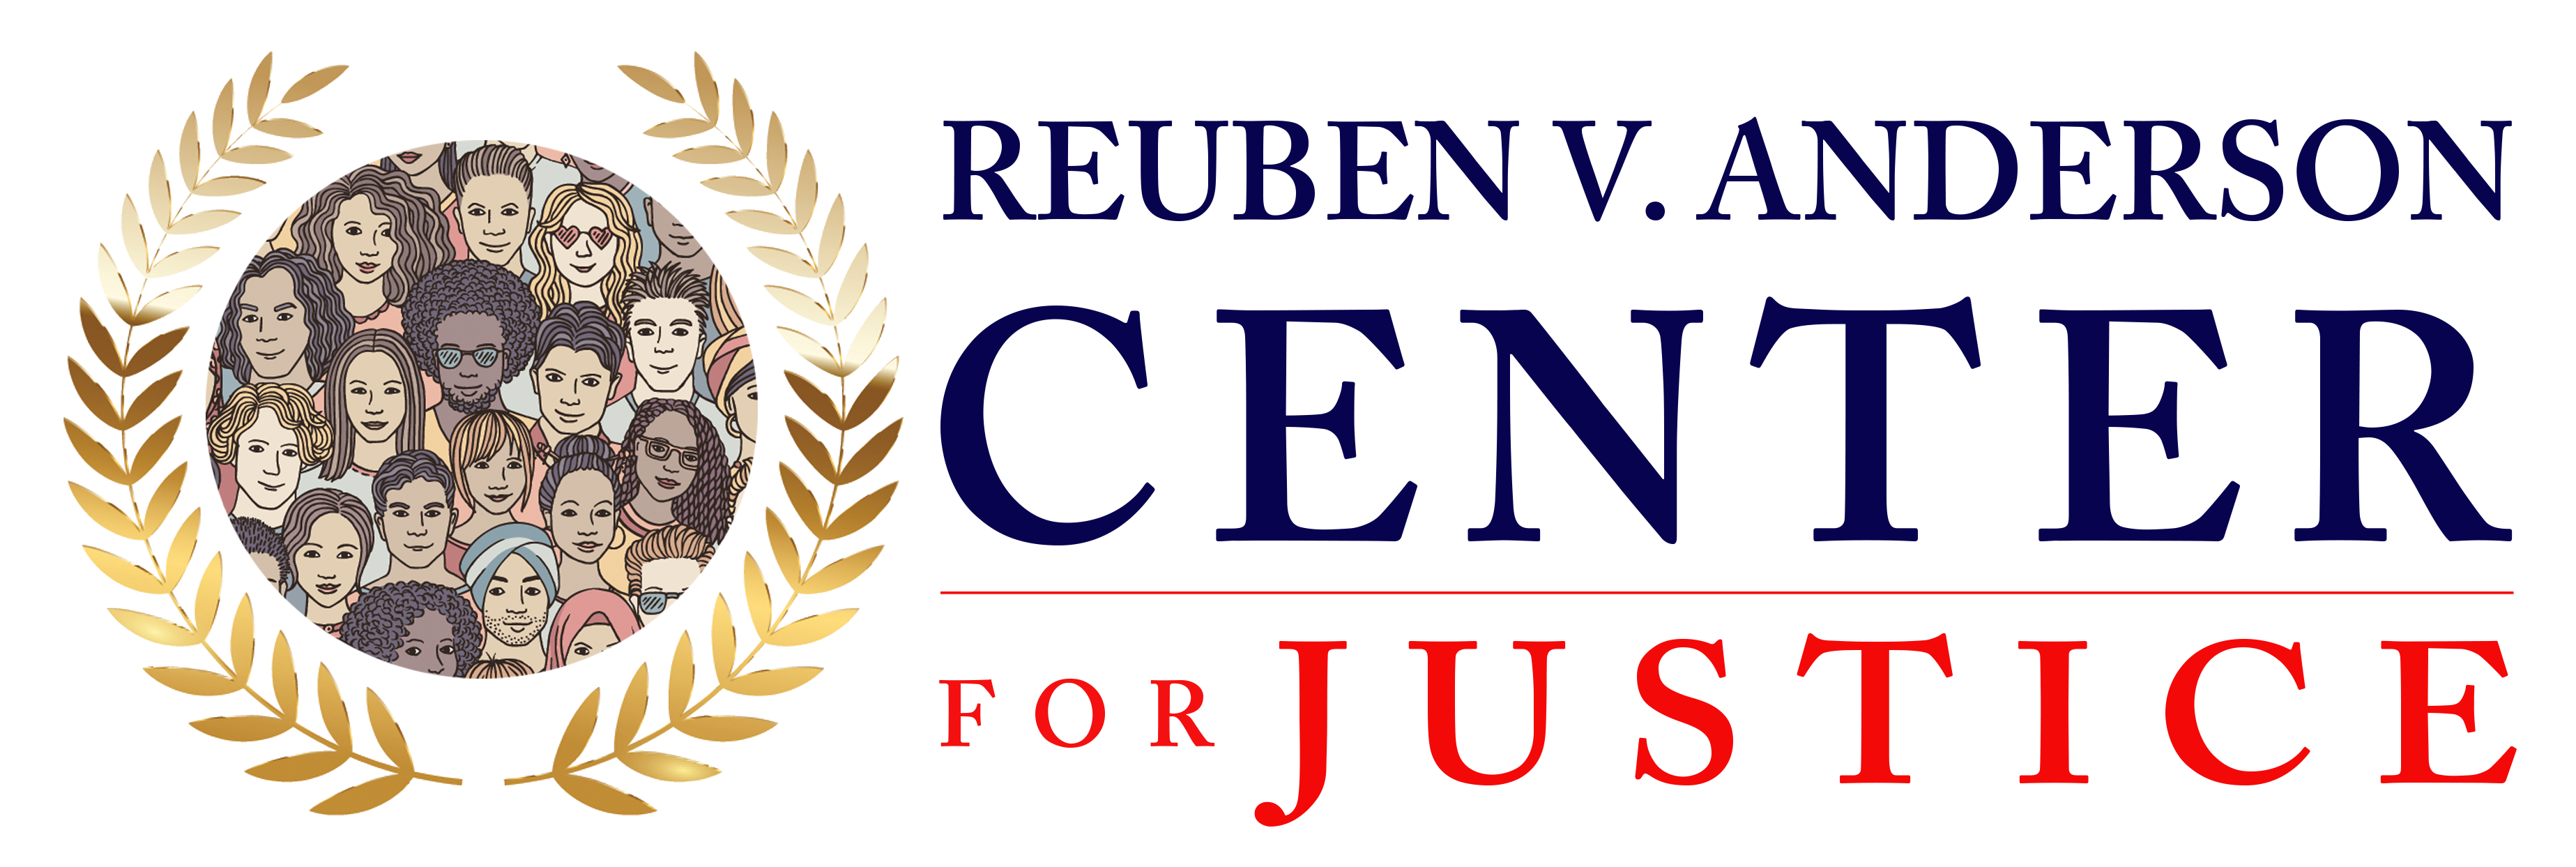 Reuben V. Anderson Center for Justice